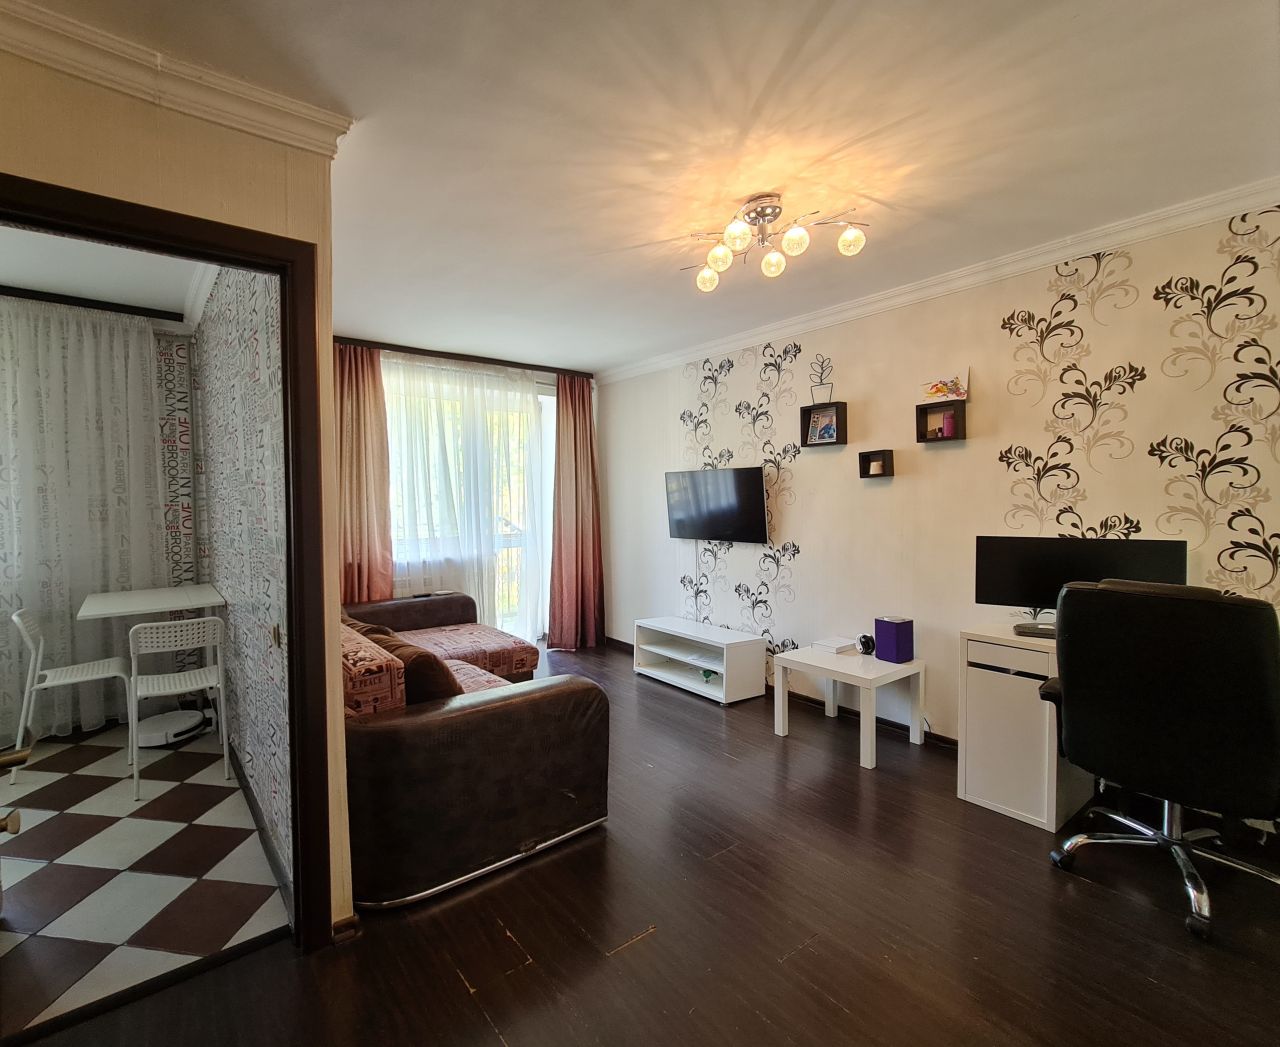 Севастополь успех 231 дом. Купить квартиру в Севастополе 1 комнатную. Купить 1 комнатную севастополь без посредников